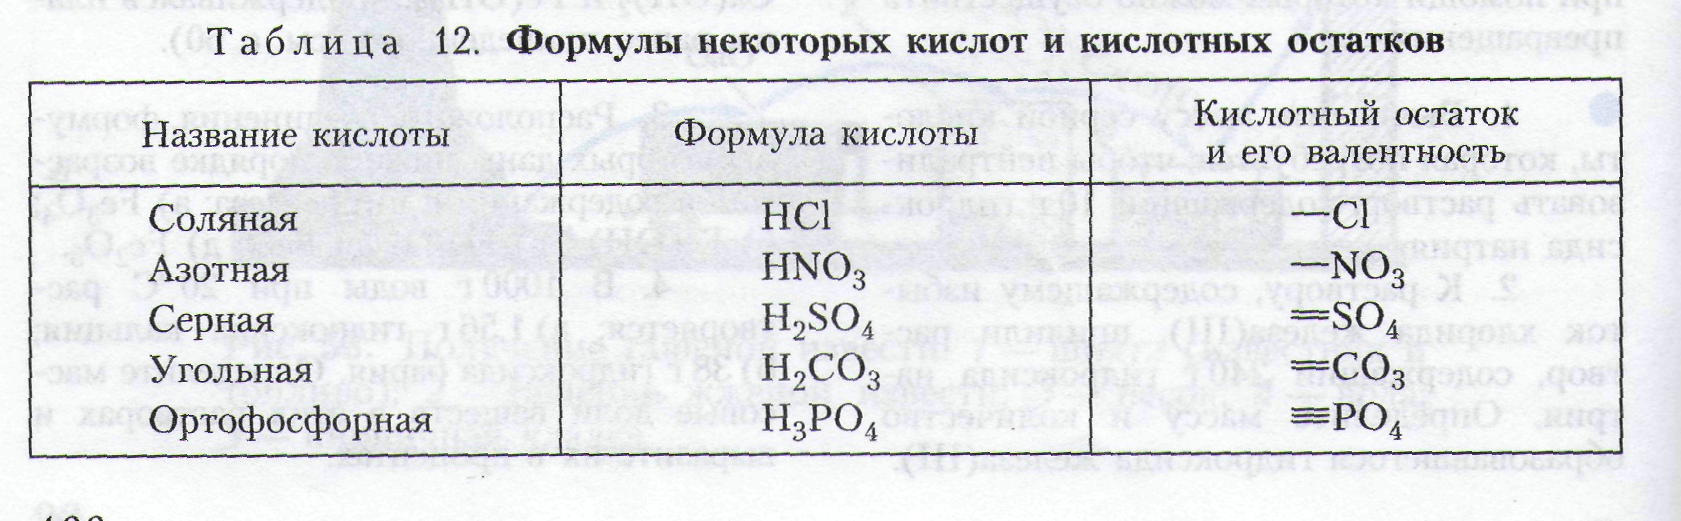 Только формулы кислот представлены в ряду. Формулы некоторых кислот и кислотных остатков таблица 8 класс. Формулы некоторых кислот и кислотных остатков таблица. Формулы кислотных остатков таблица. Формулы некоторых кислот и кислотных остатков 8 класс химия таблица.